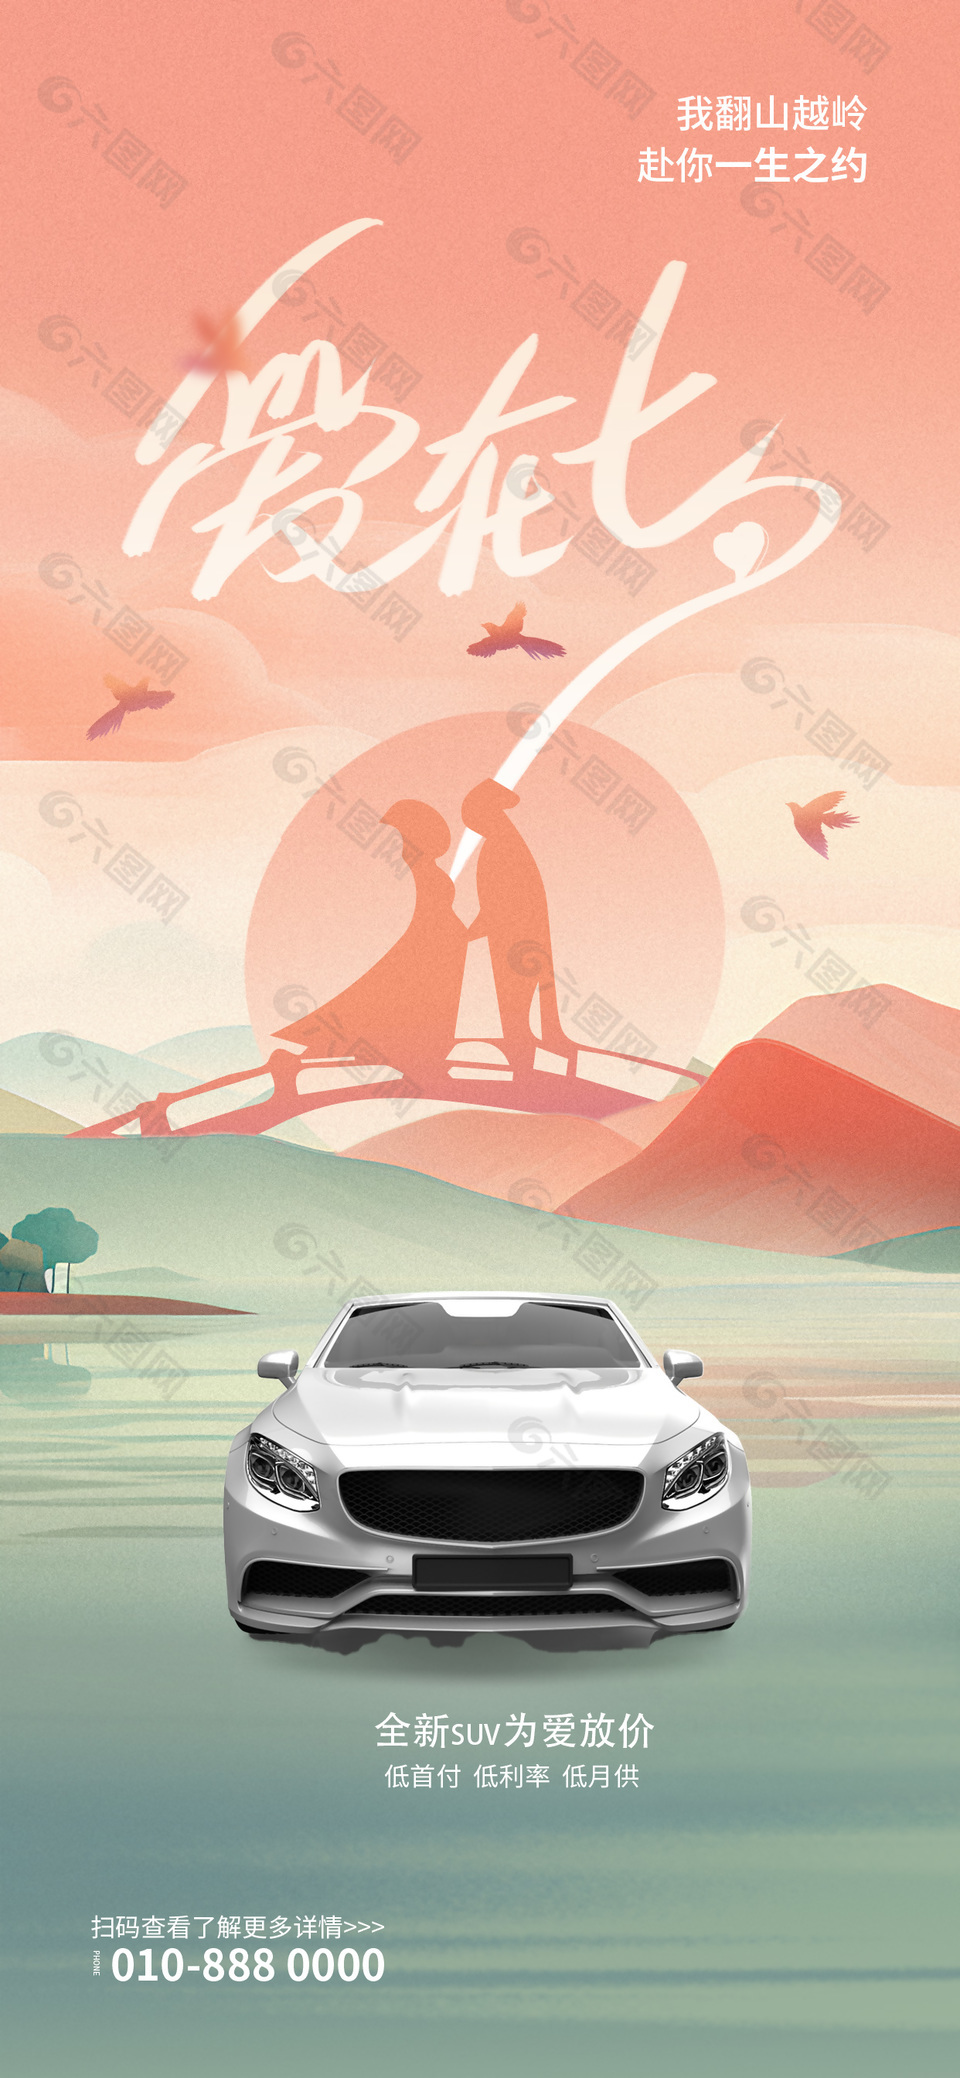 爱在七夕主题汽车宣传营销海报长图设计